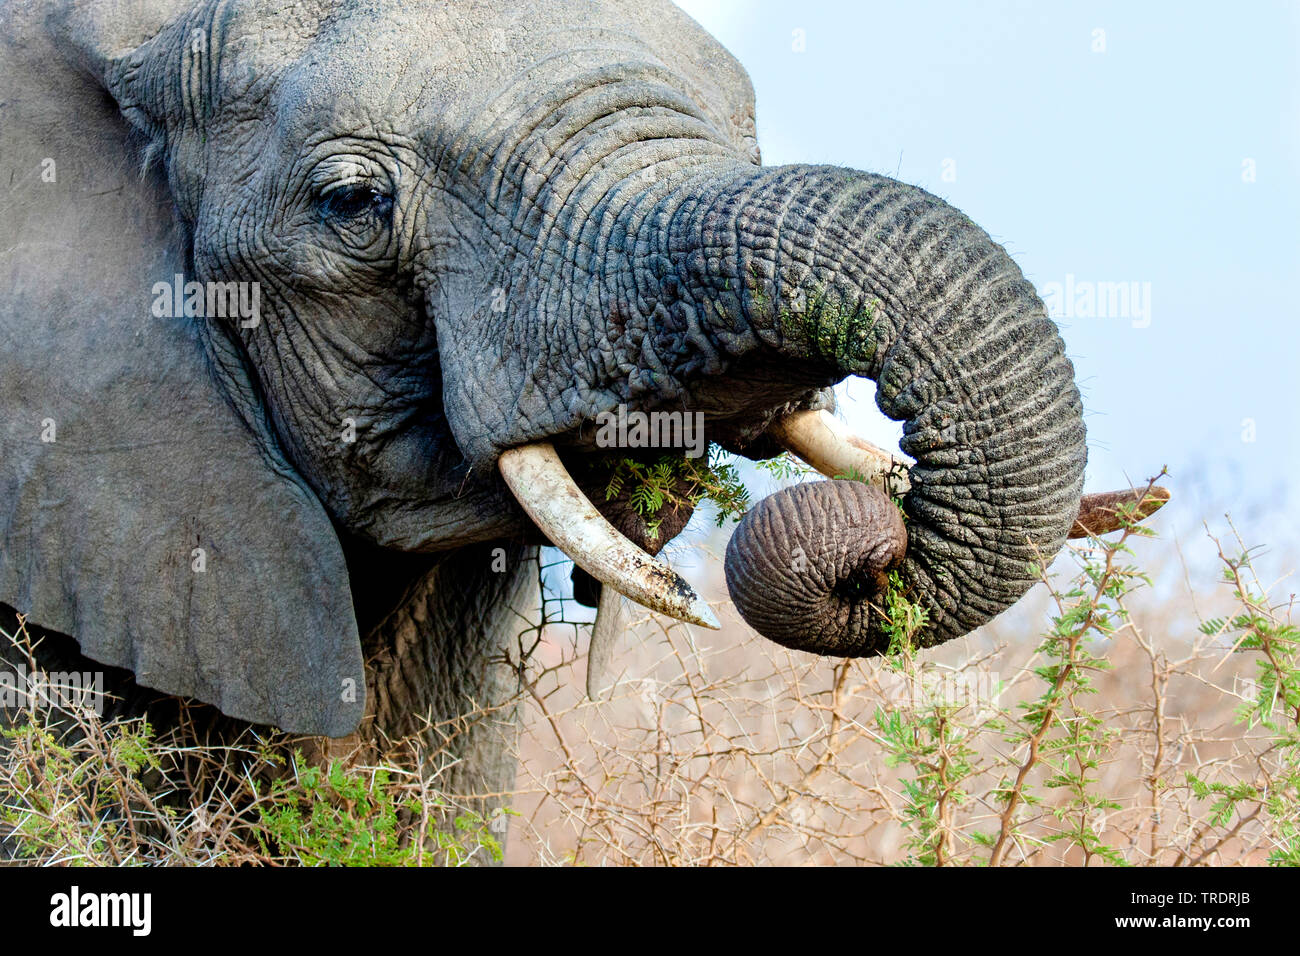 L'éléphant africain (Loxodonta africana), l'alimentation d'une épine, portrait, Afrique du Sud, Mpumalanga, Kruger National Park Banque D'Images